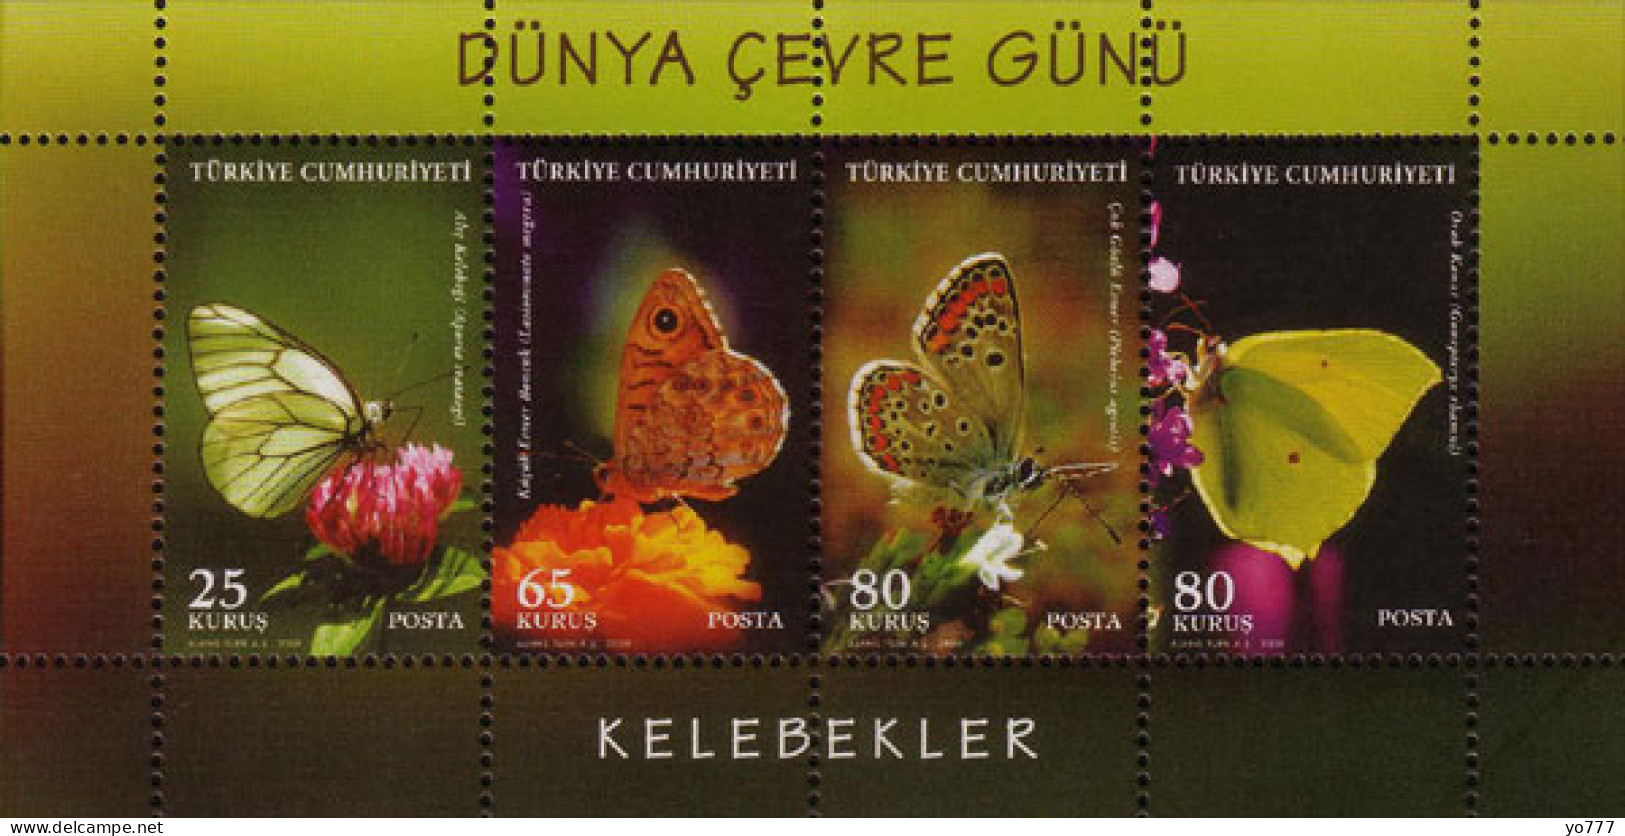 (3746-49 BL-71) TURKEY WORLD ENVIRONMENT DAY SOUVENIR SHEET (BUTTERFLIES) MNH ** - Nuovi